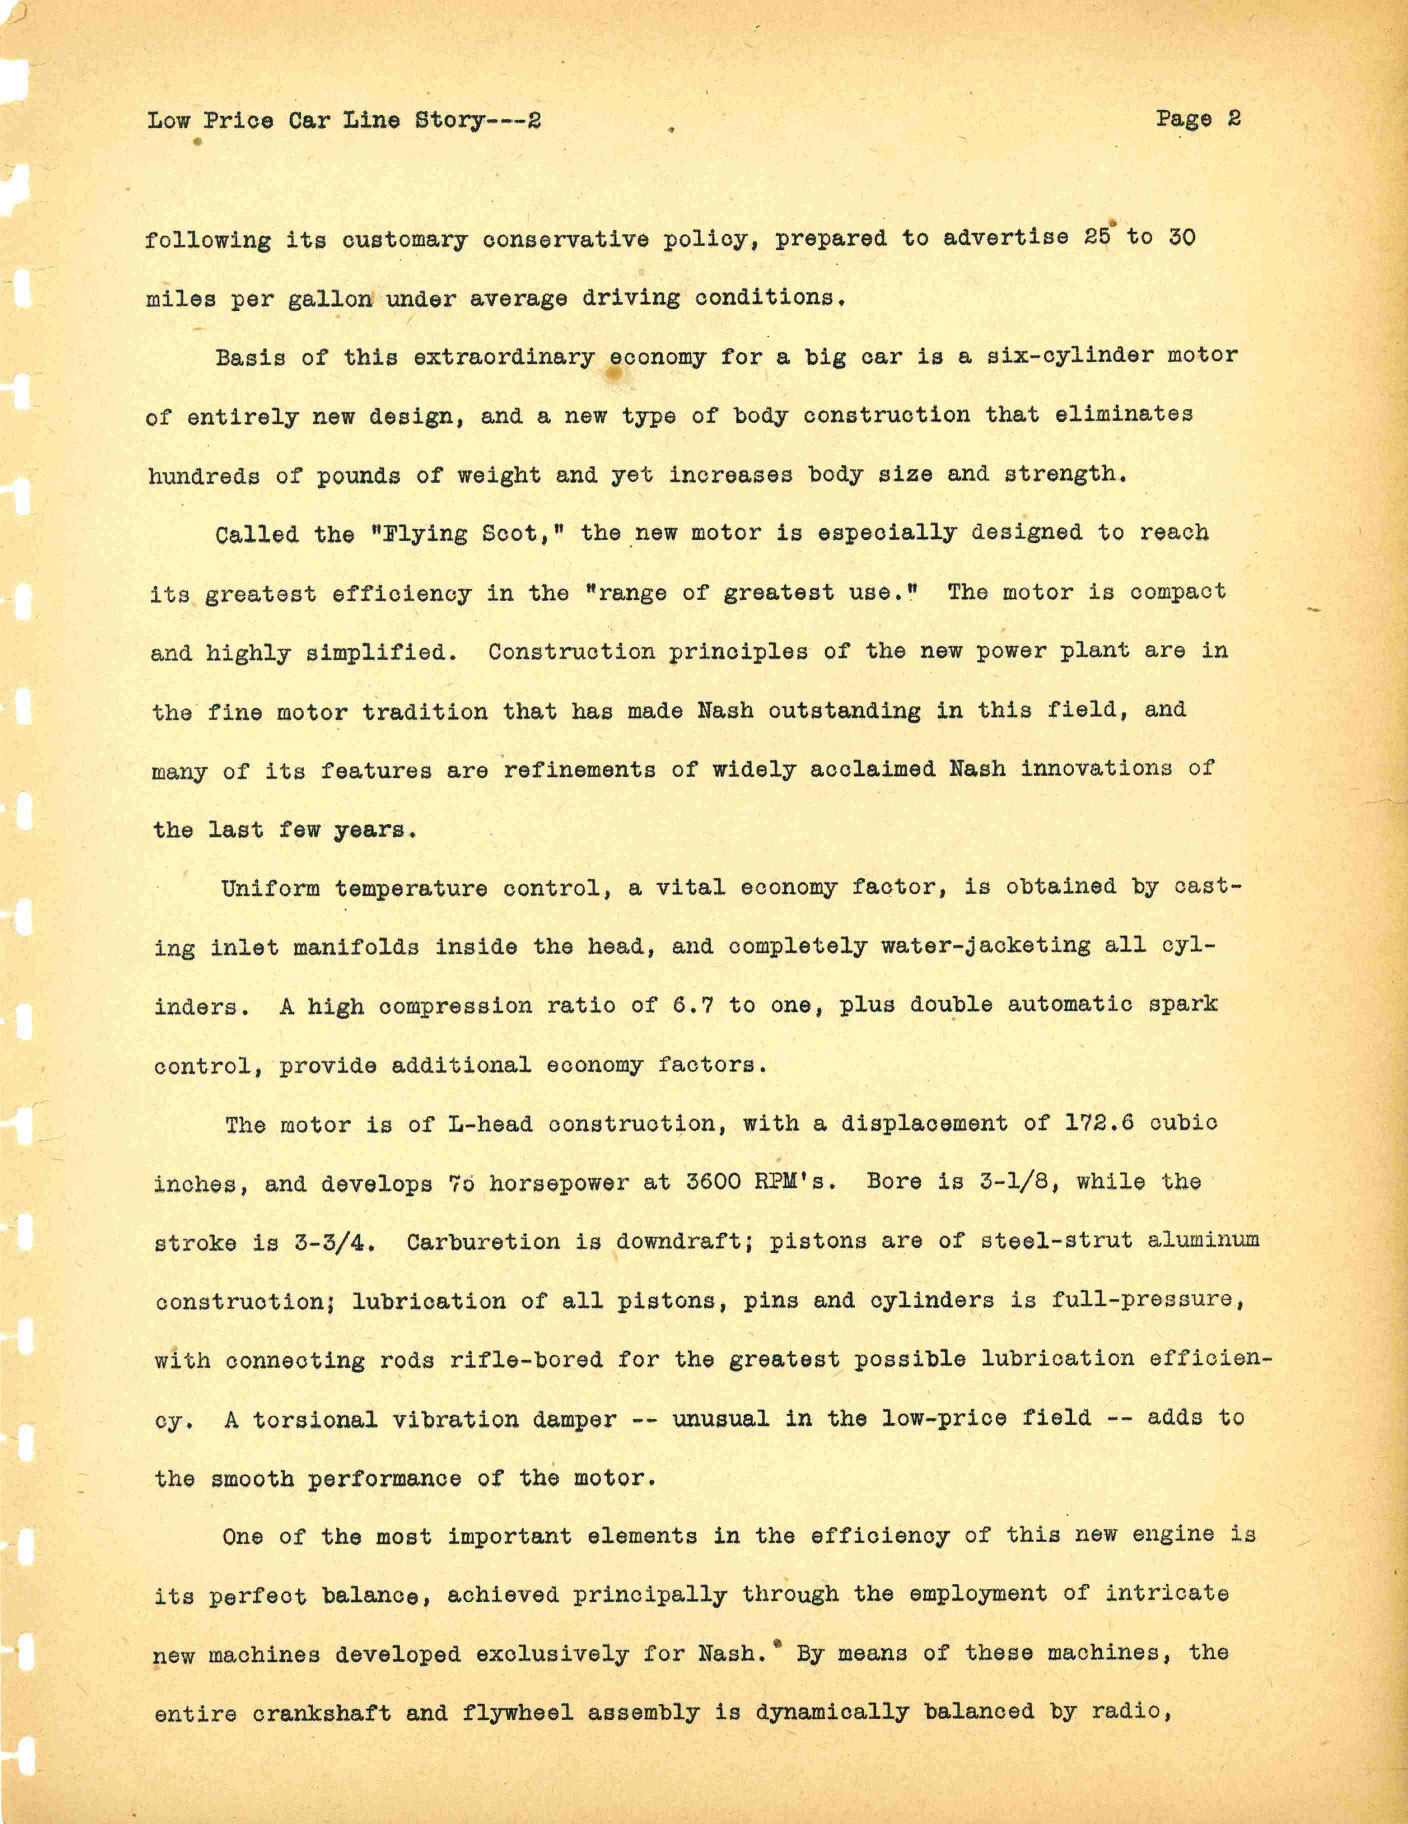 1941 Nash Press Kit Page 15